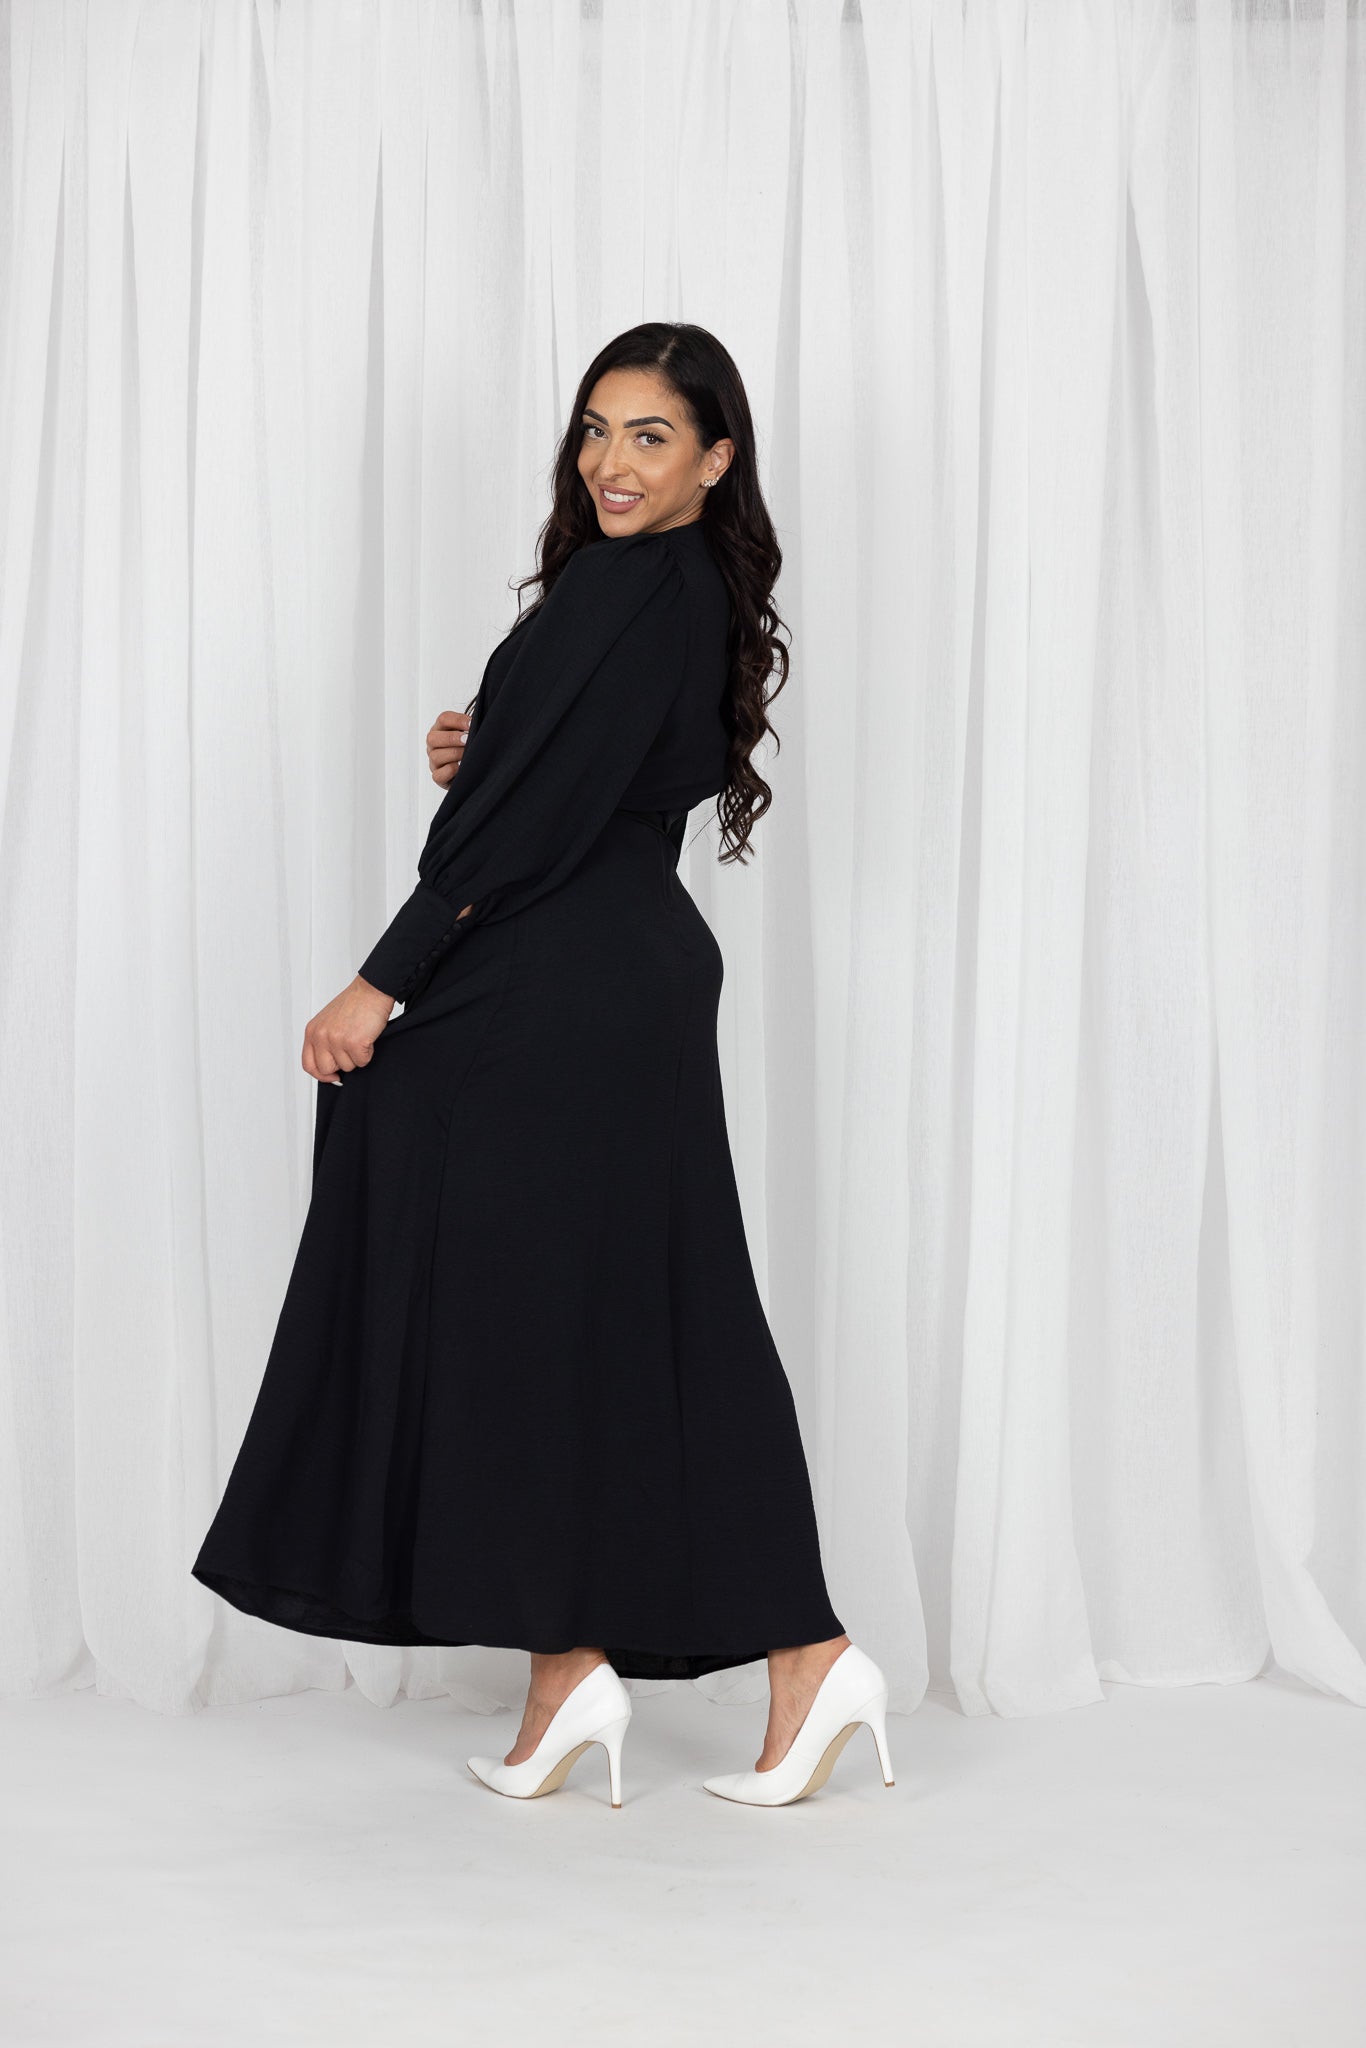 M7990Black-dress-abaya